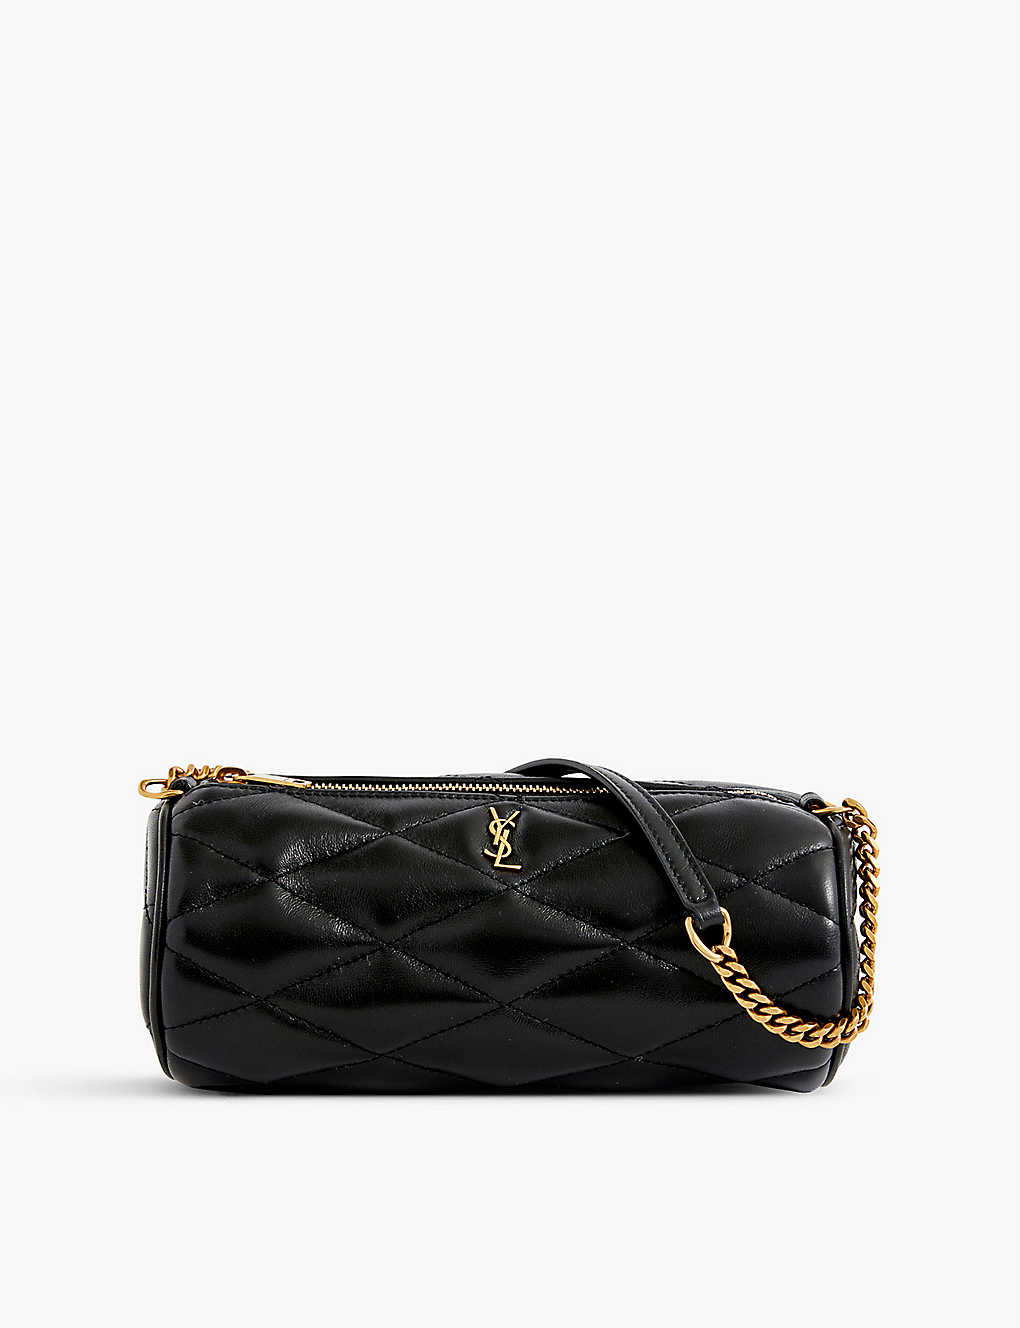 Saint Laurent Sade Xs Leather Shoulder Bag In Black/gold